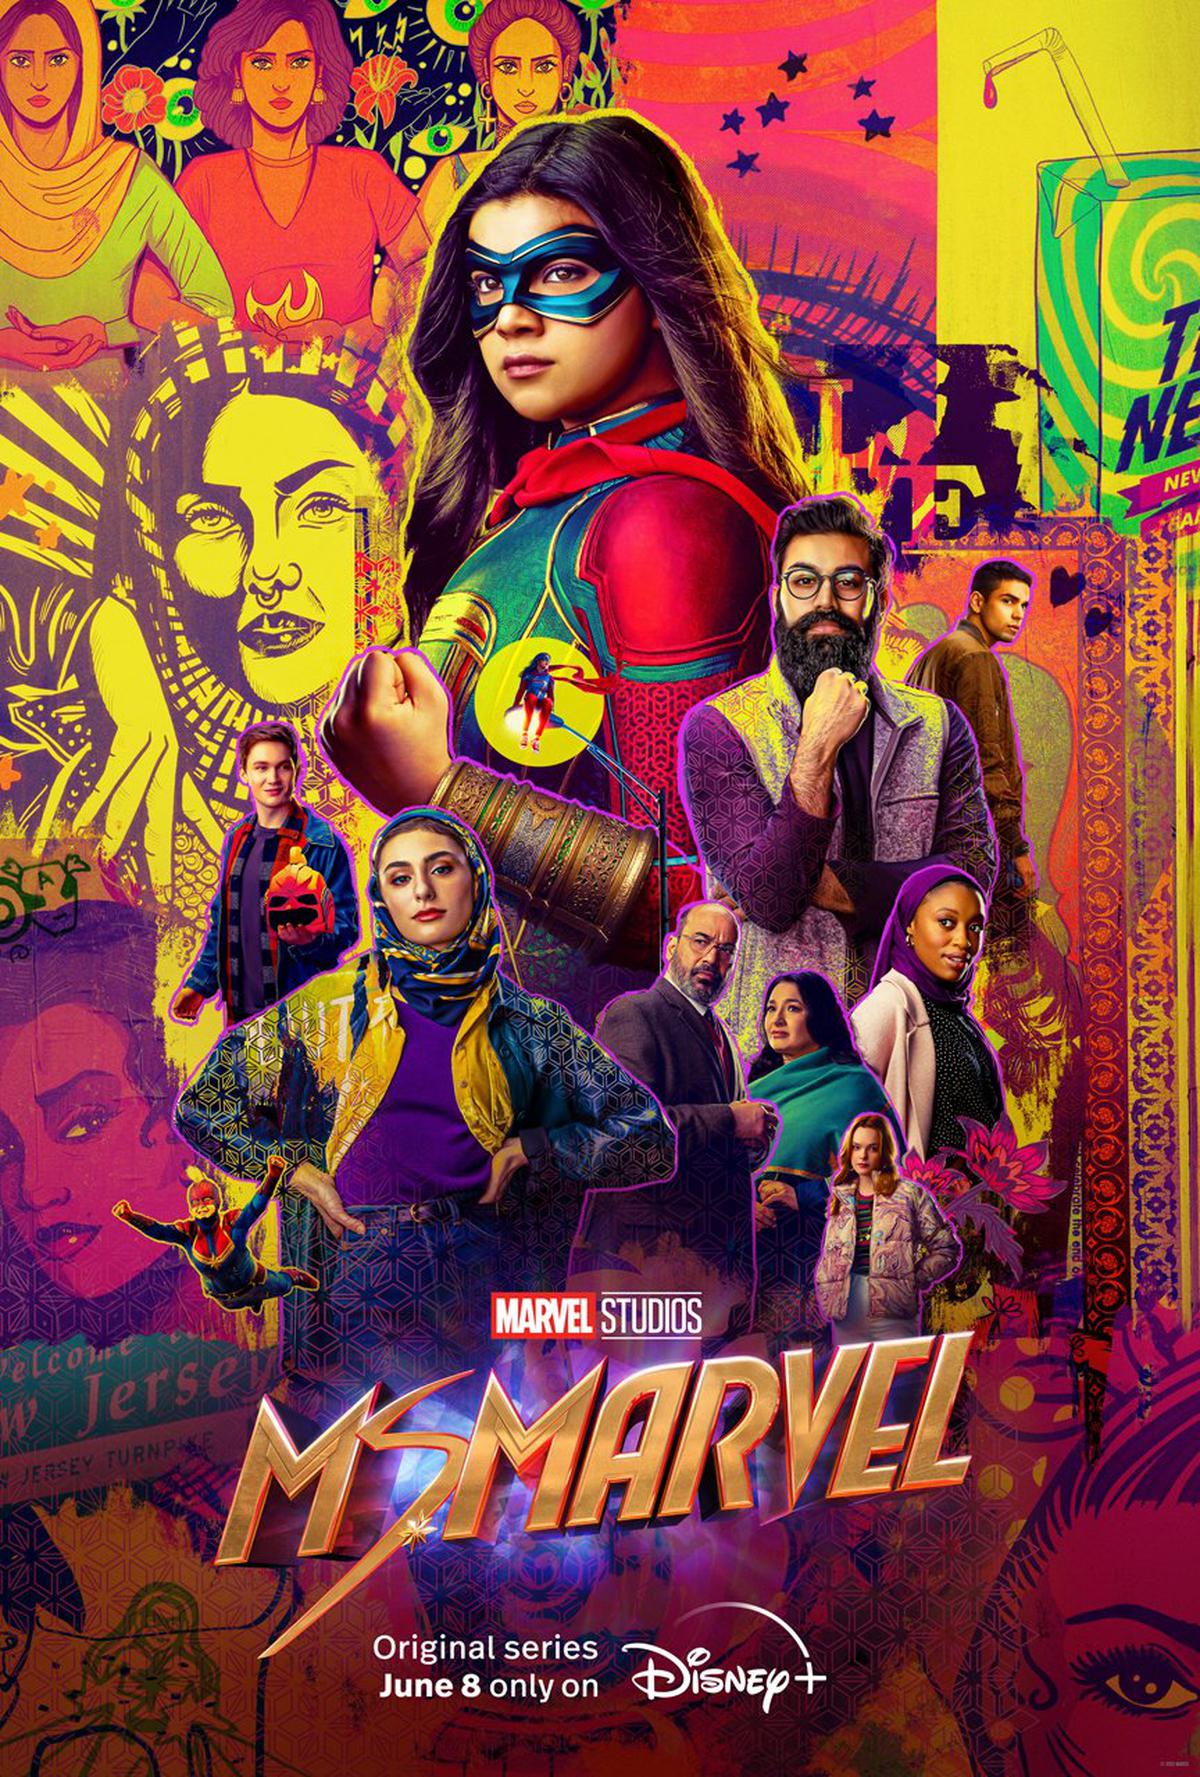 Ms. Marvel, an Original series from Marvel Studios, starts streaming June 8 on Disney+ Hotstar